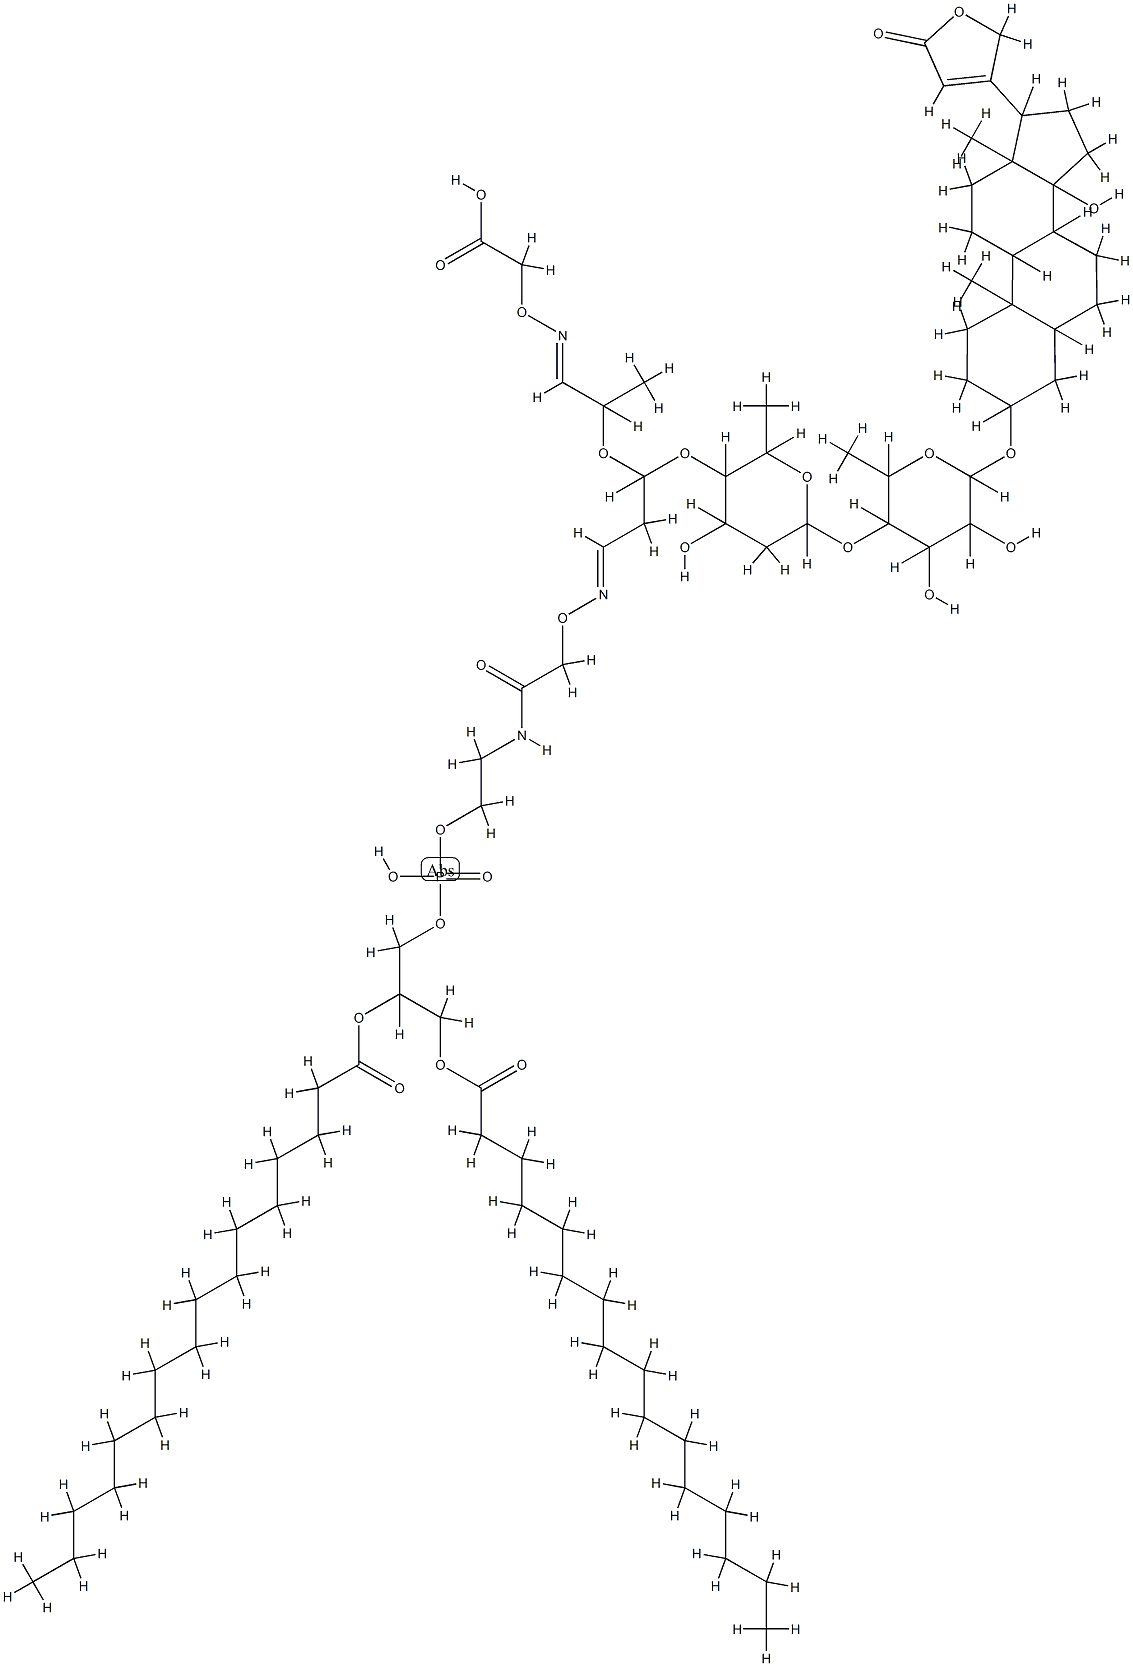 digoxin-phosphatidylethanolamine conjugate Structure